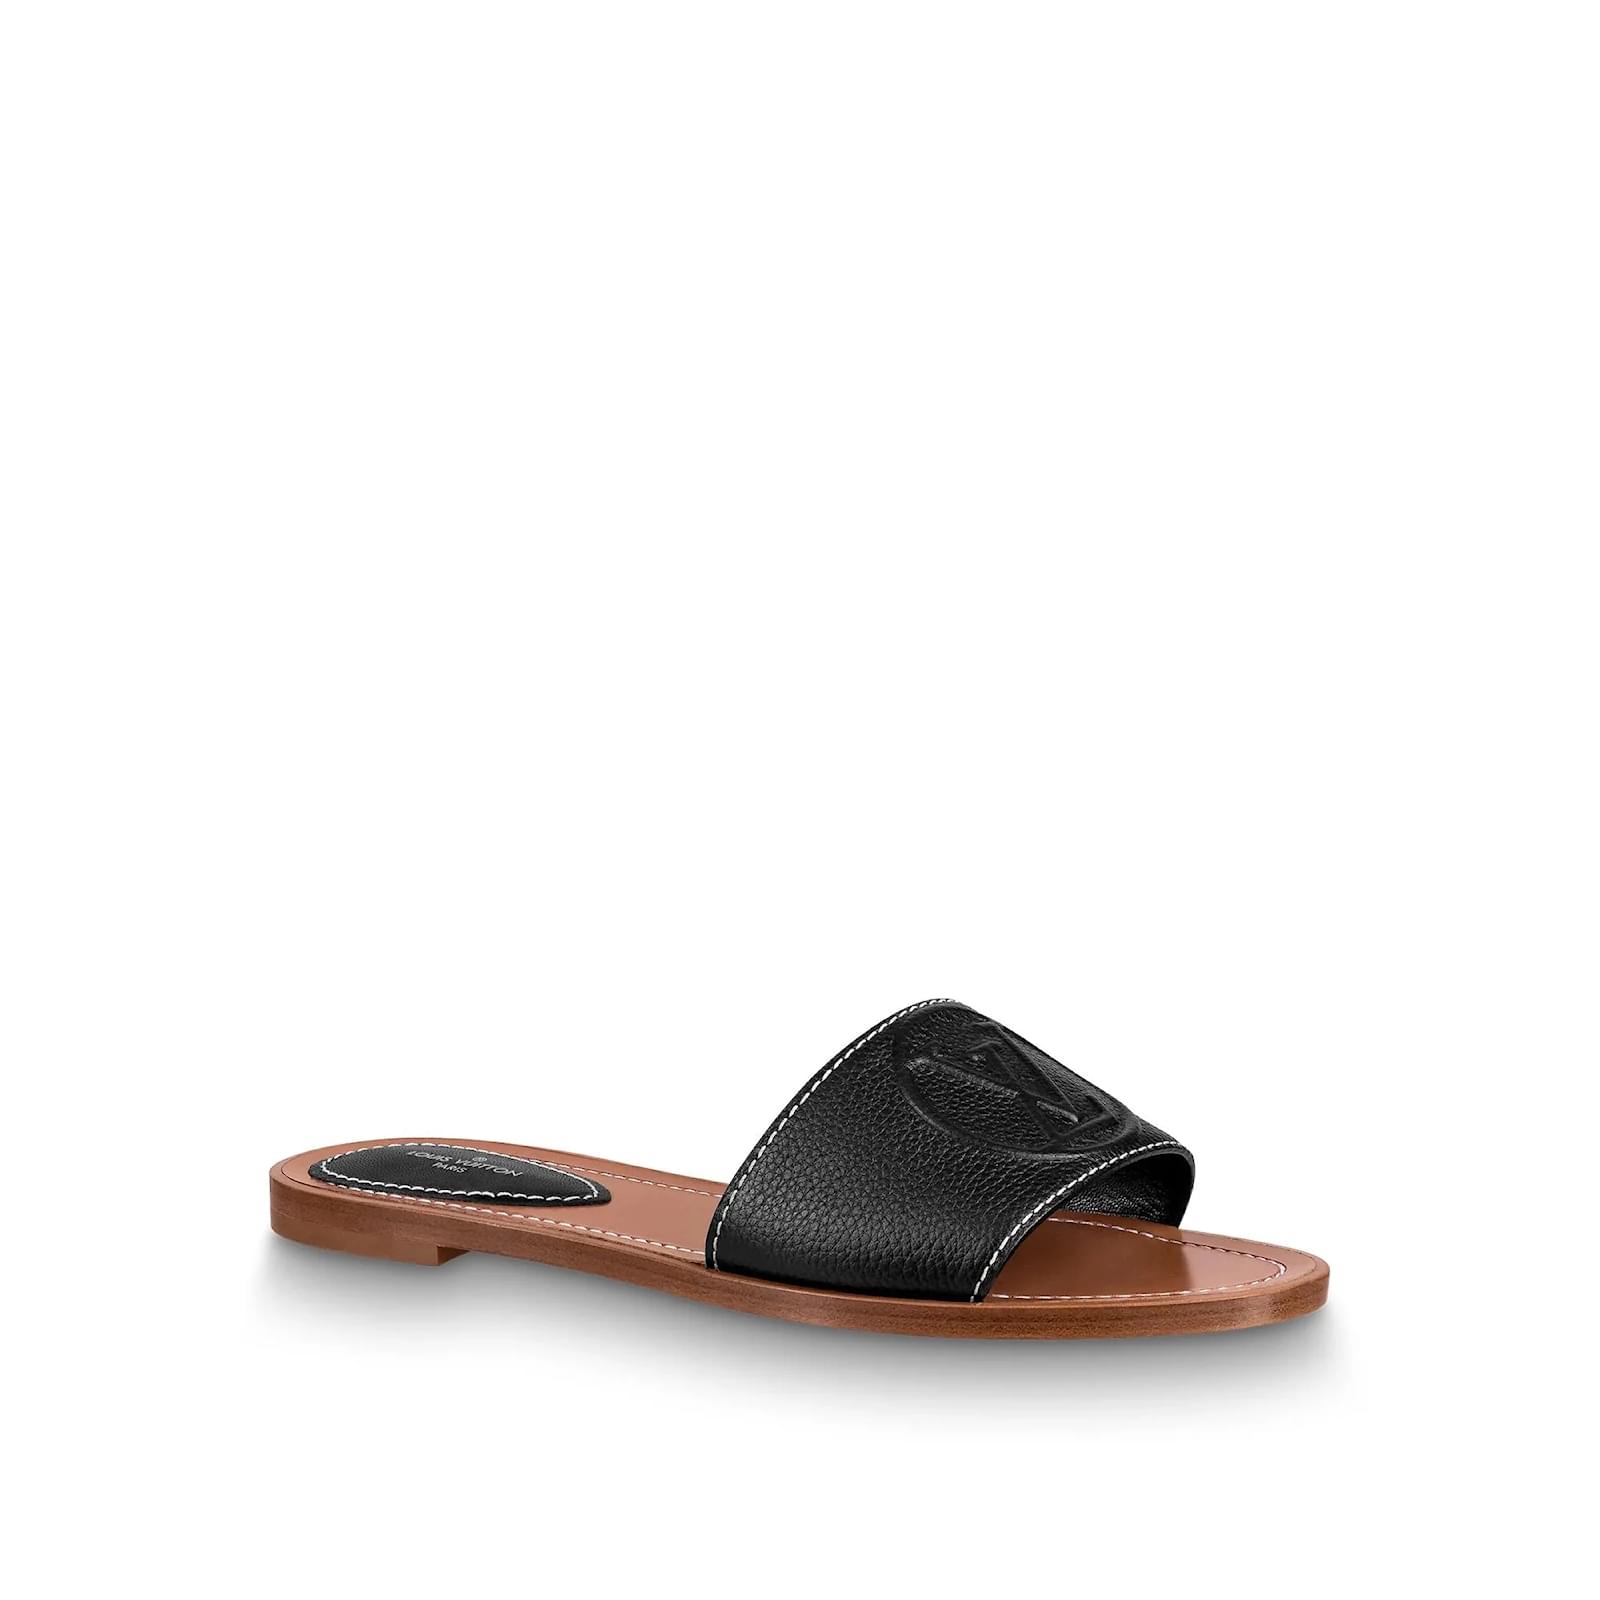 Louis Vuitton Pre-owned Women's Leather Sandals - Black - EU 38